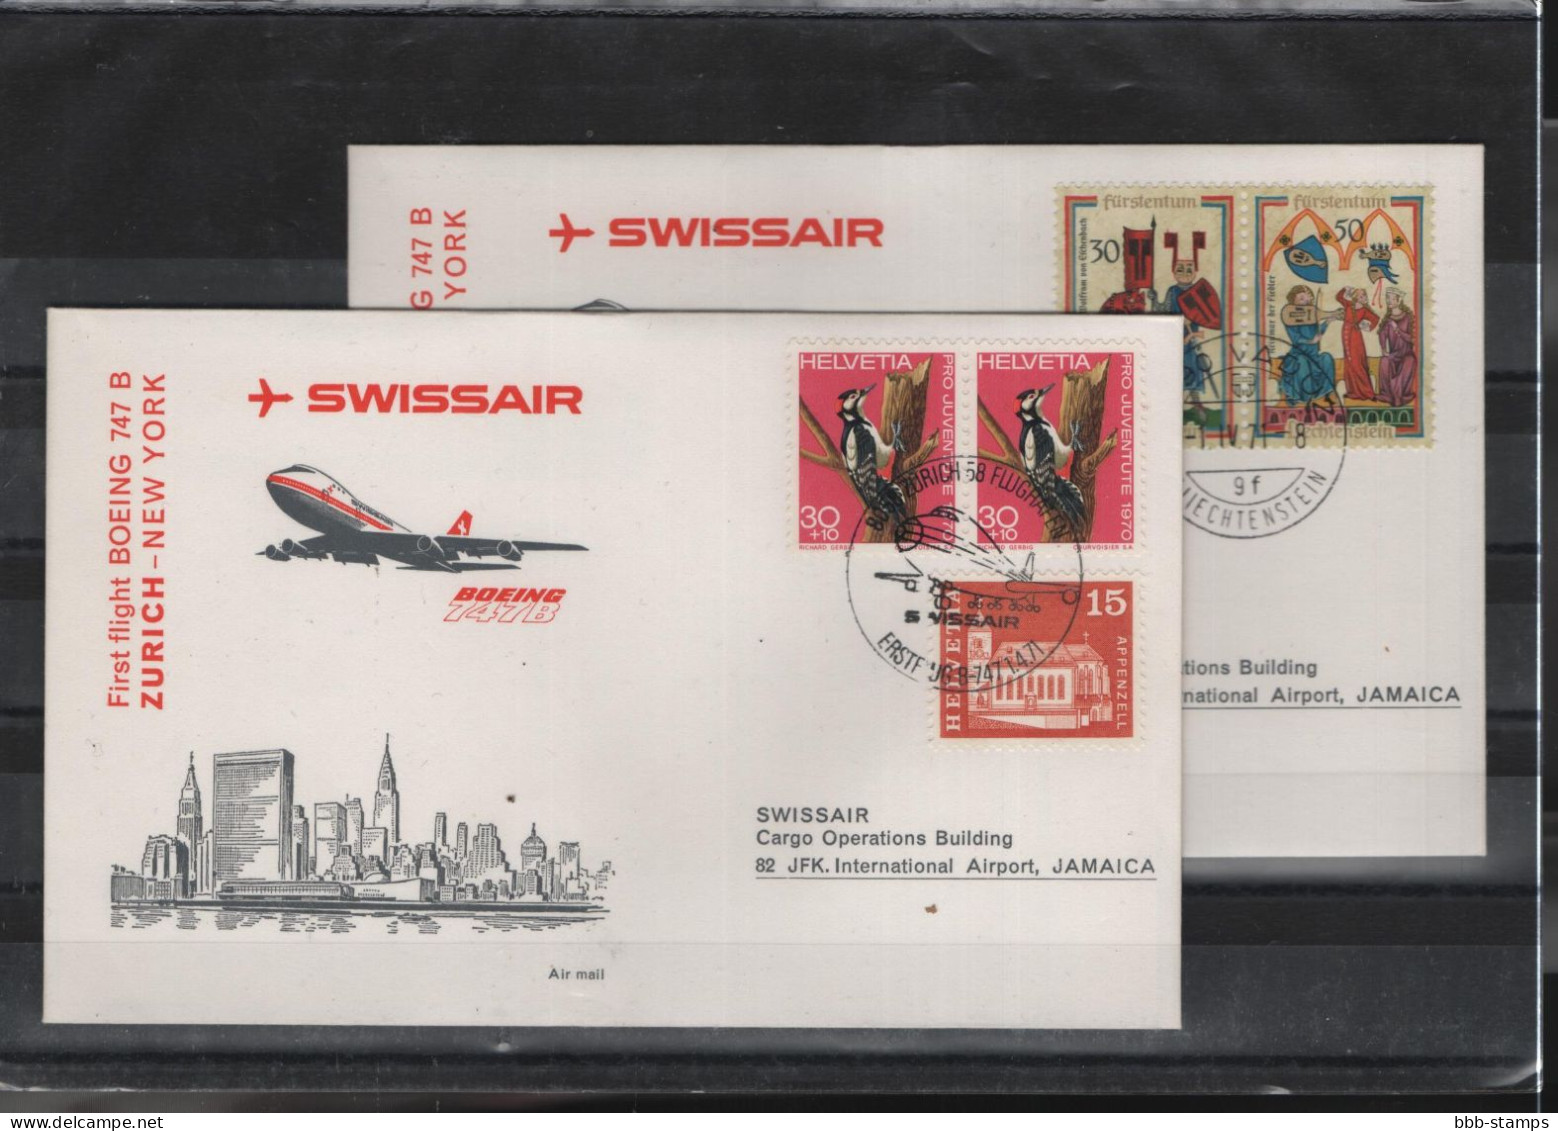 Schweiz Luftpost FFC Swissair 1.4.1971 Zürich - New York - Premiers Vols